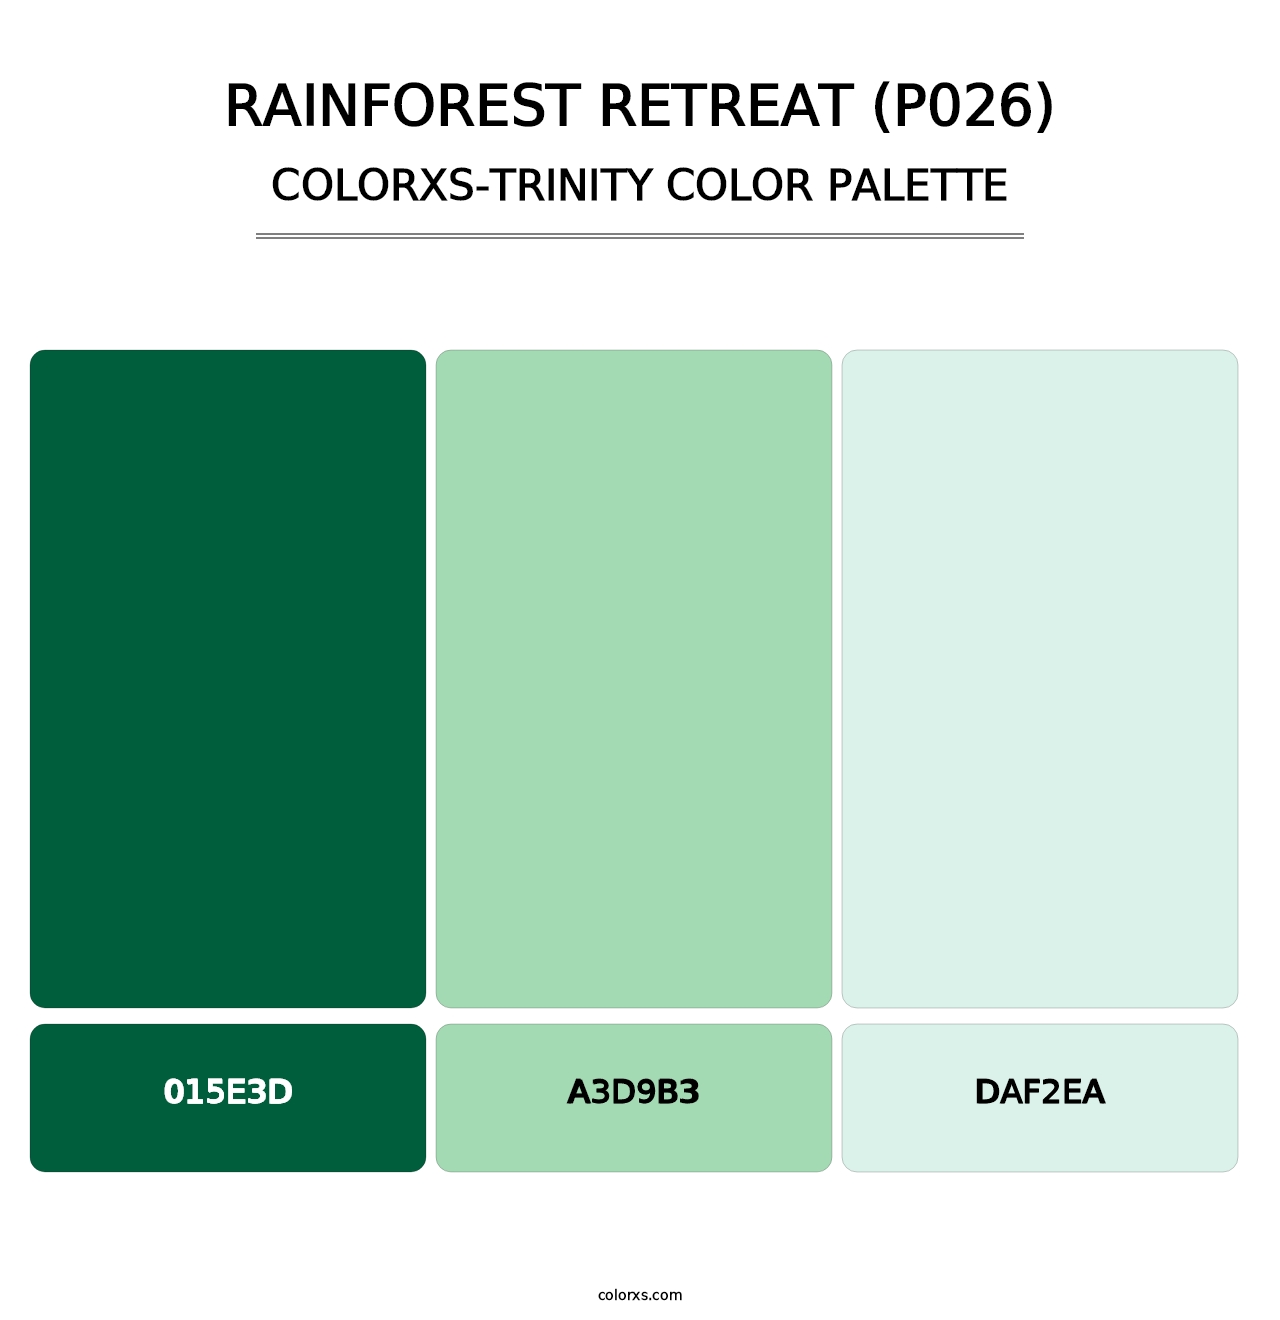 Rainforest Retreat (P026) - Colorxs Trinity Palette